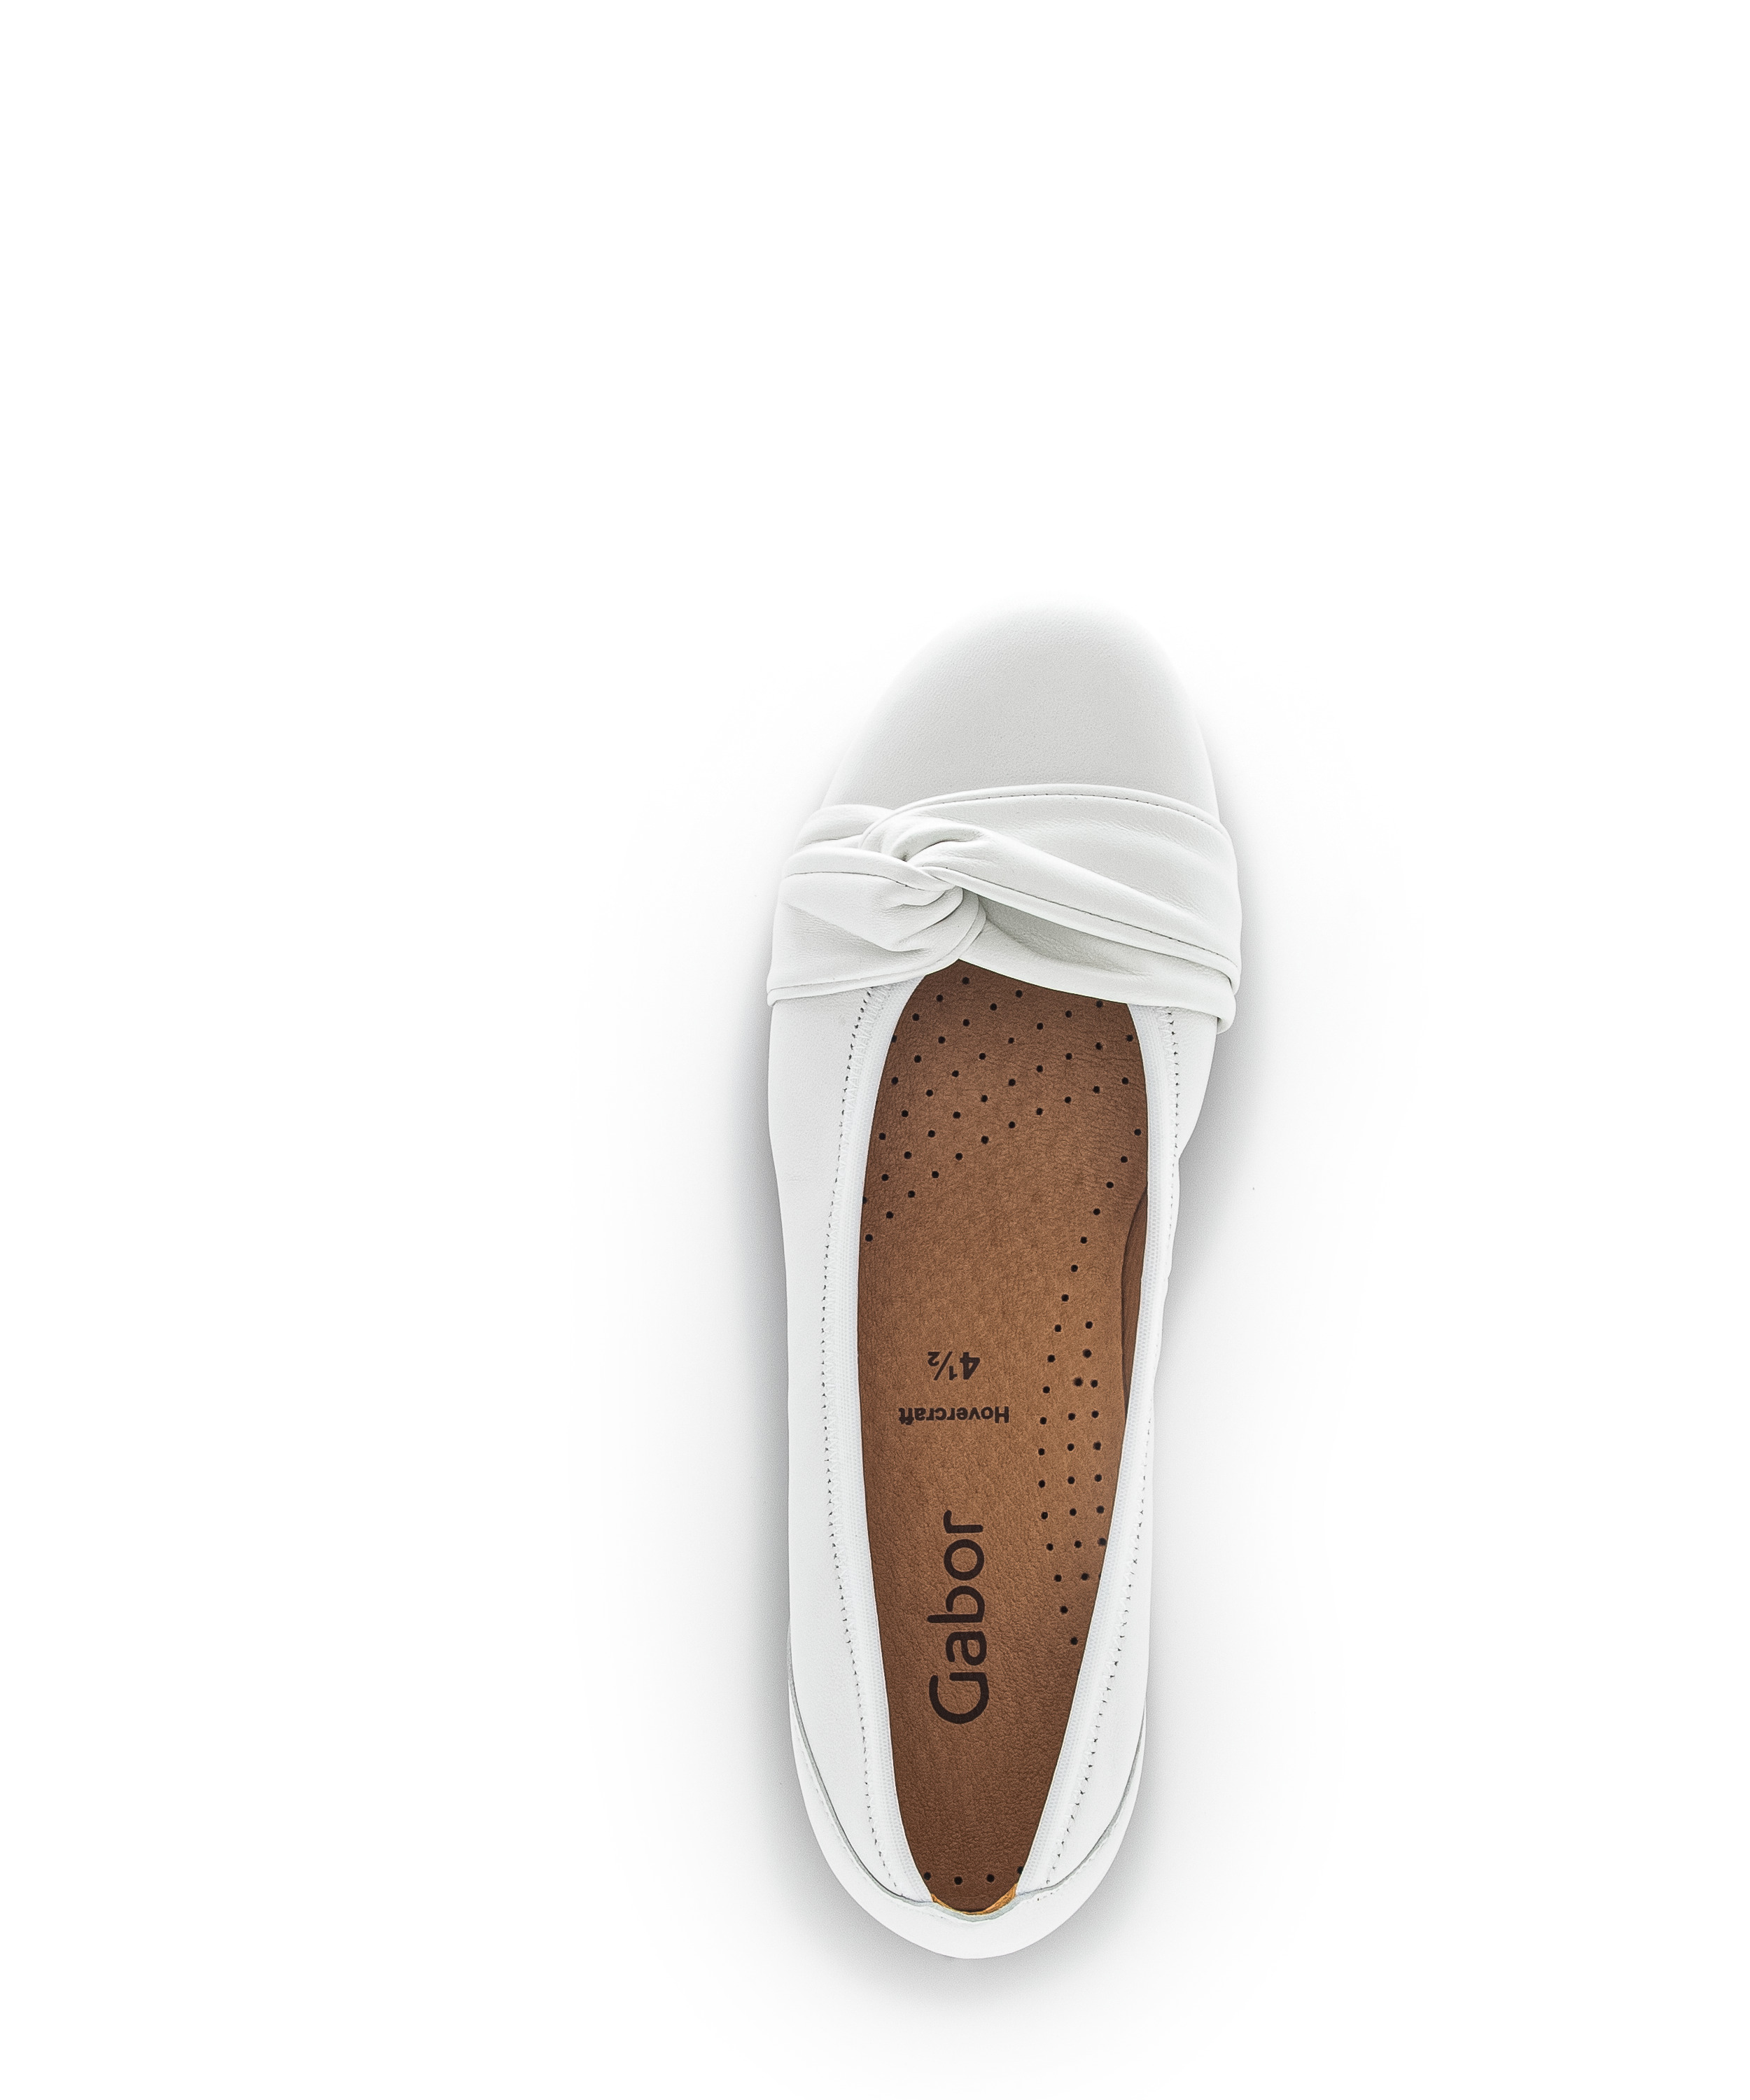 Gabor Shoes Ballerina - Weiß Glattleder